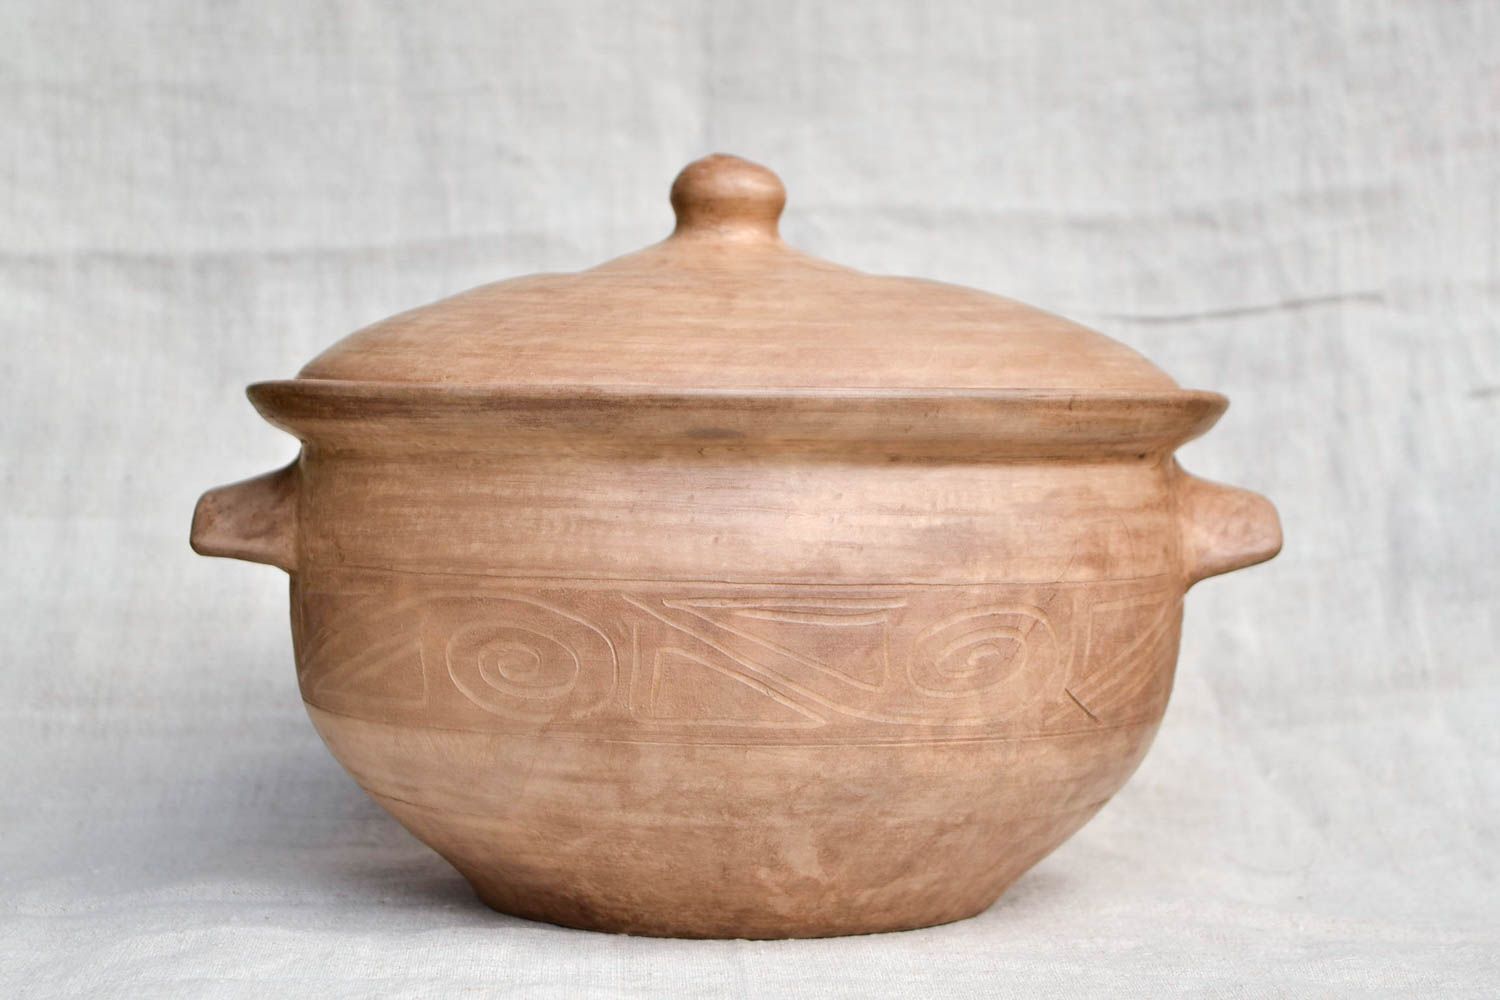 Topf aus Ton handgefertigt Deko für Küche Keramik Geschirr Geschenk Ideen 4 L foto 4